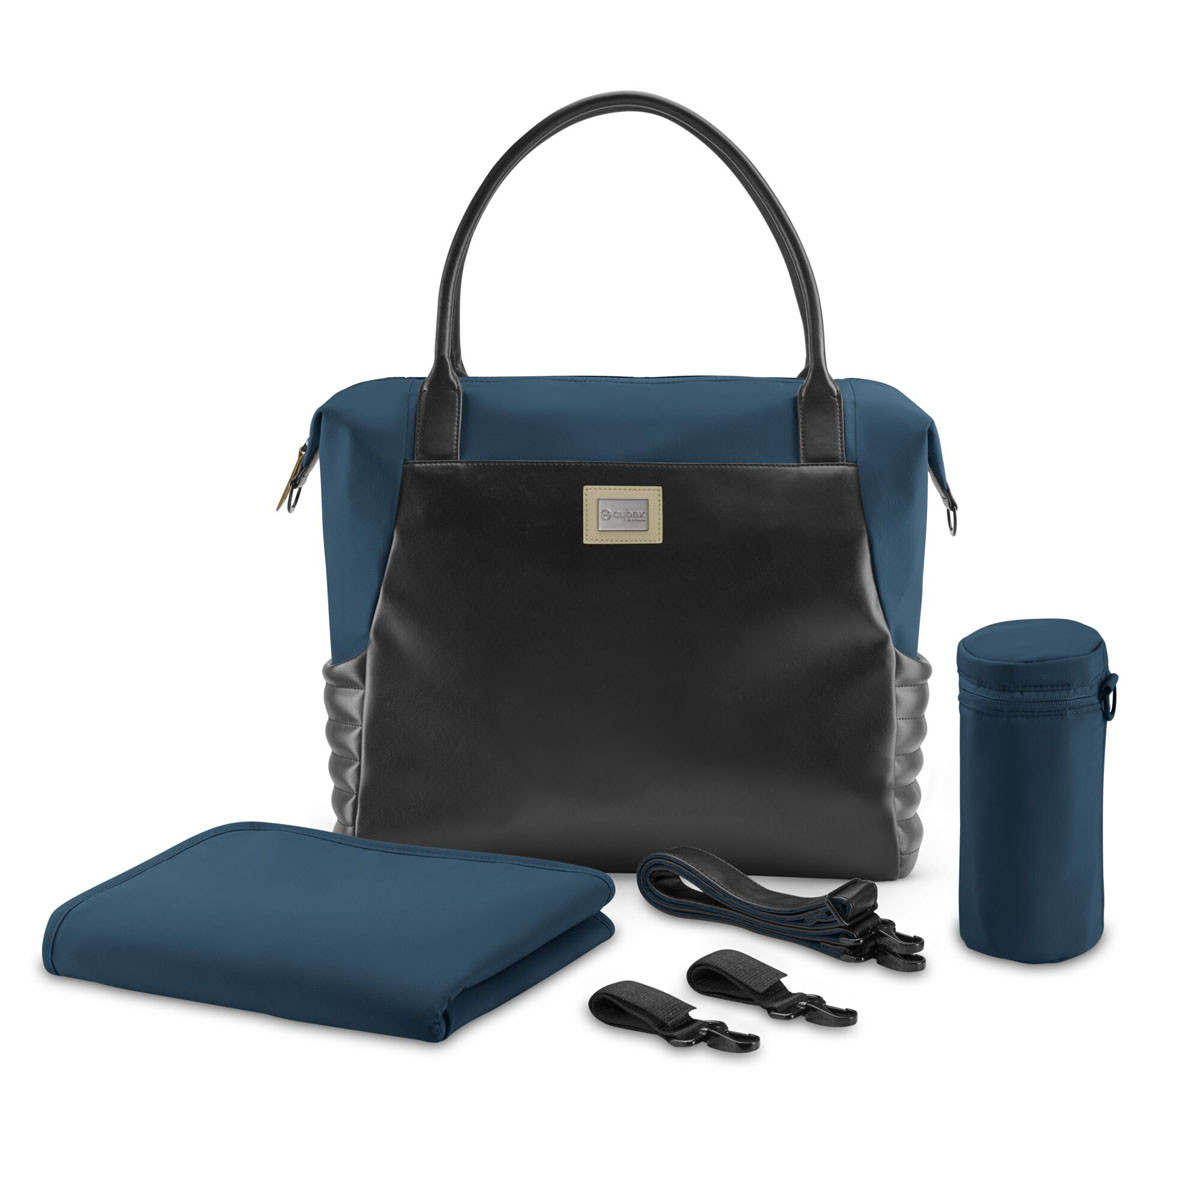 Bolso shopper bag de Cybex incluye  portabiberones térmico extraíble, un cambiador y para guardar artículos húmedos.